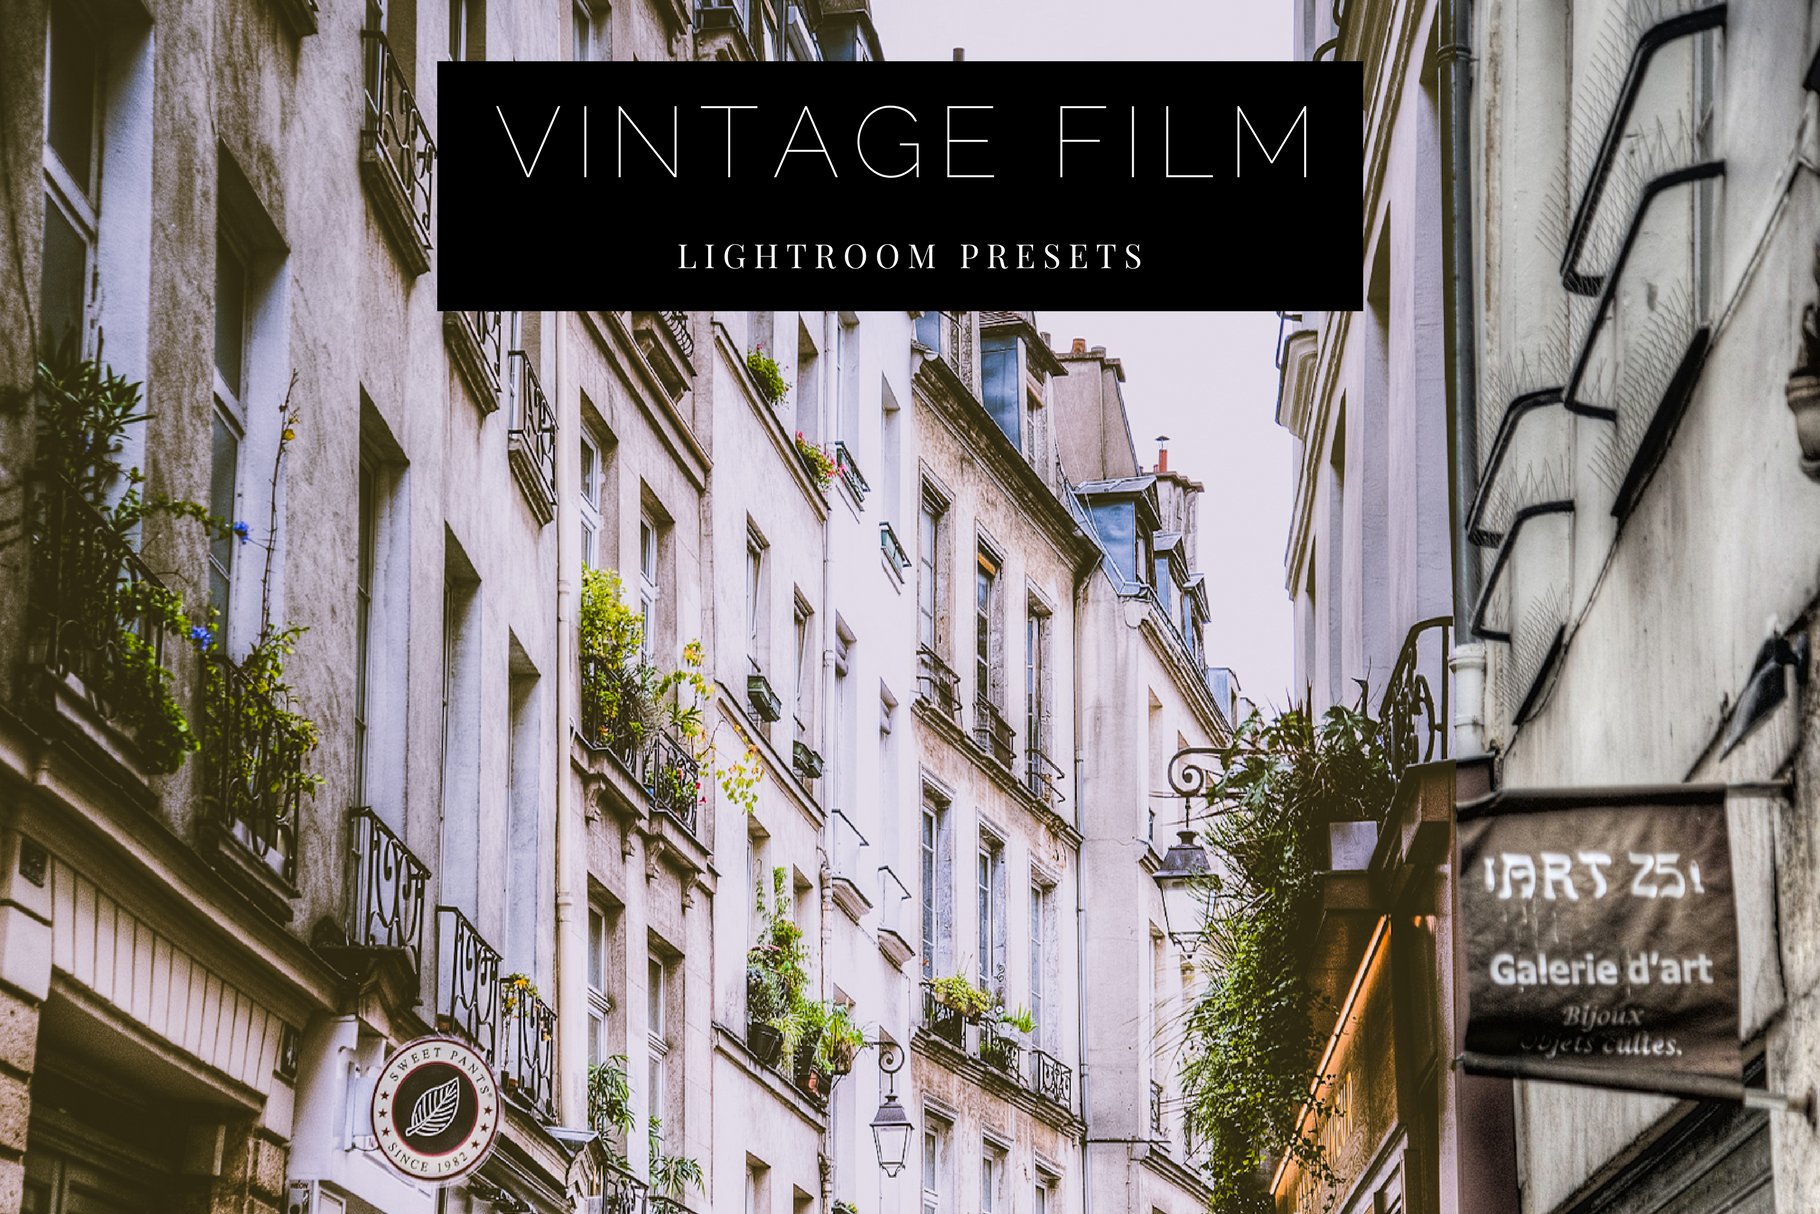 Vintage Film Lightroom Presetscover image.